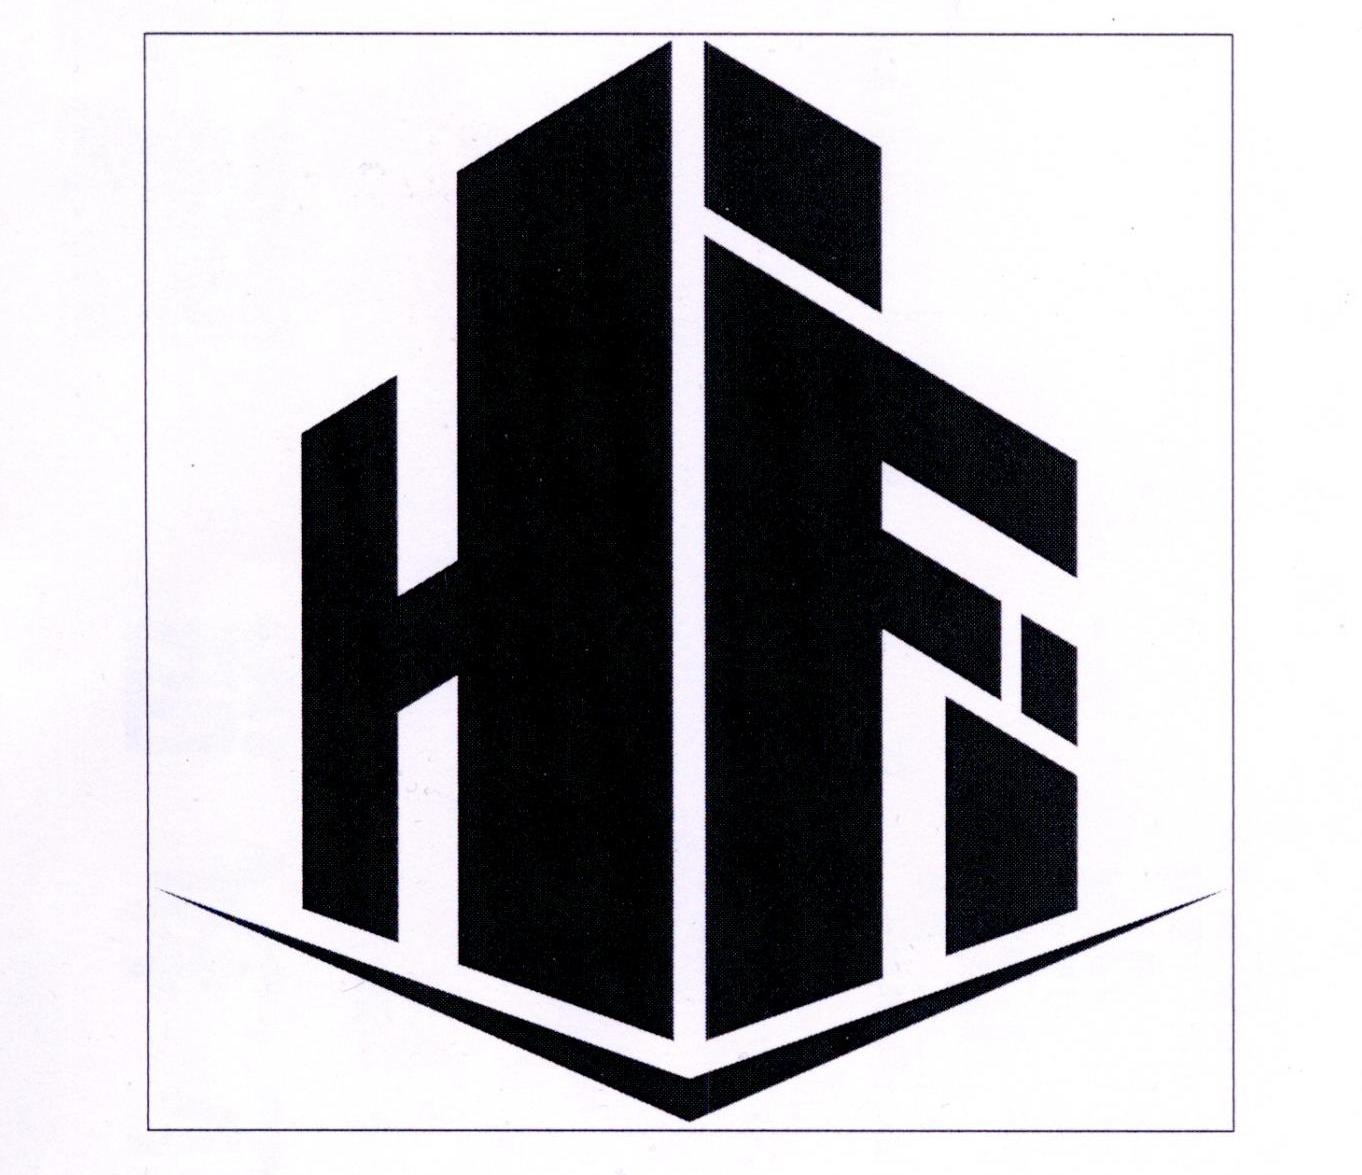 商标文字hf商标注册号 37709519,商标申请人广西恒发房地产经纪有限